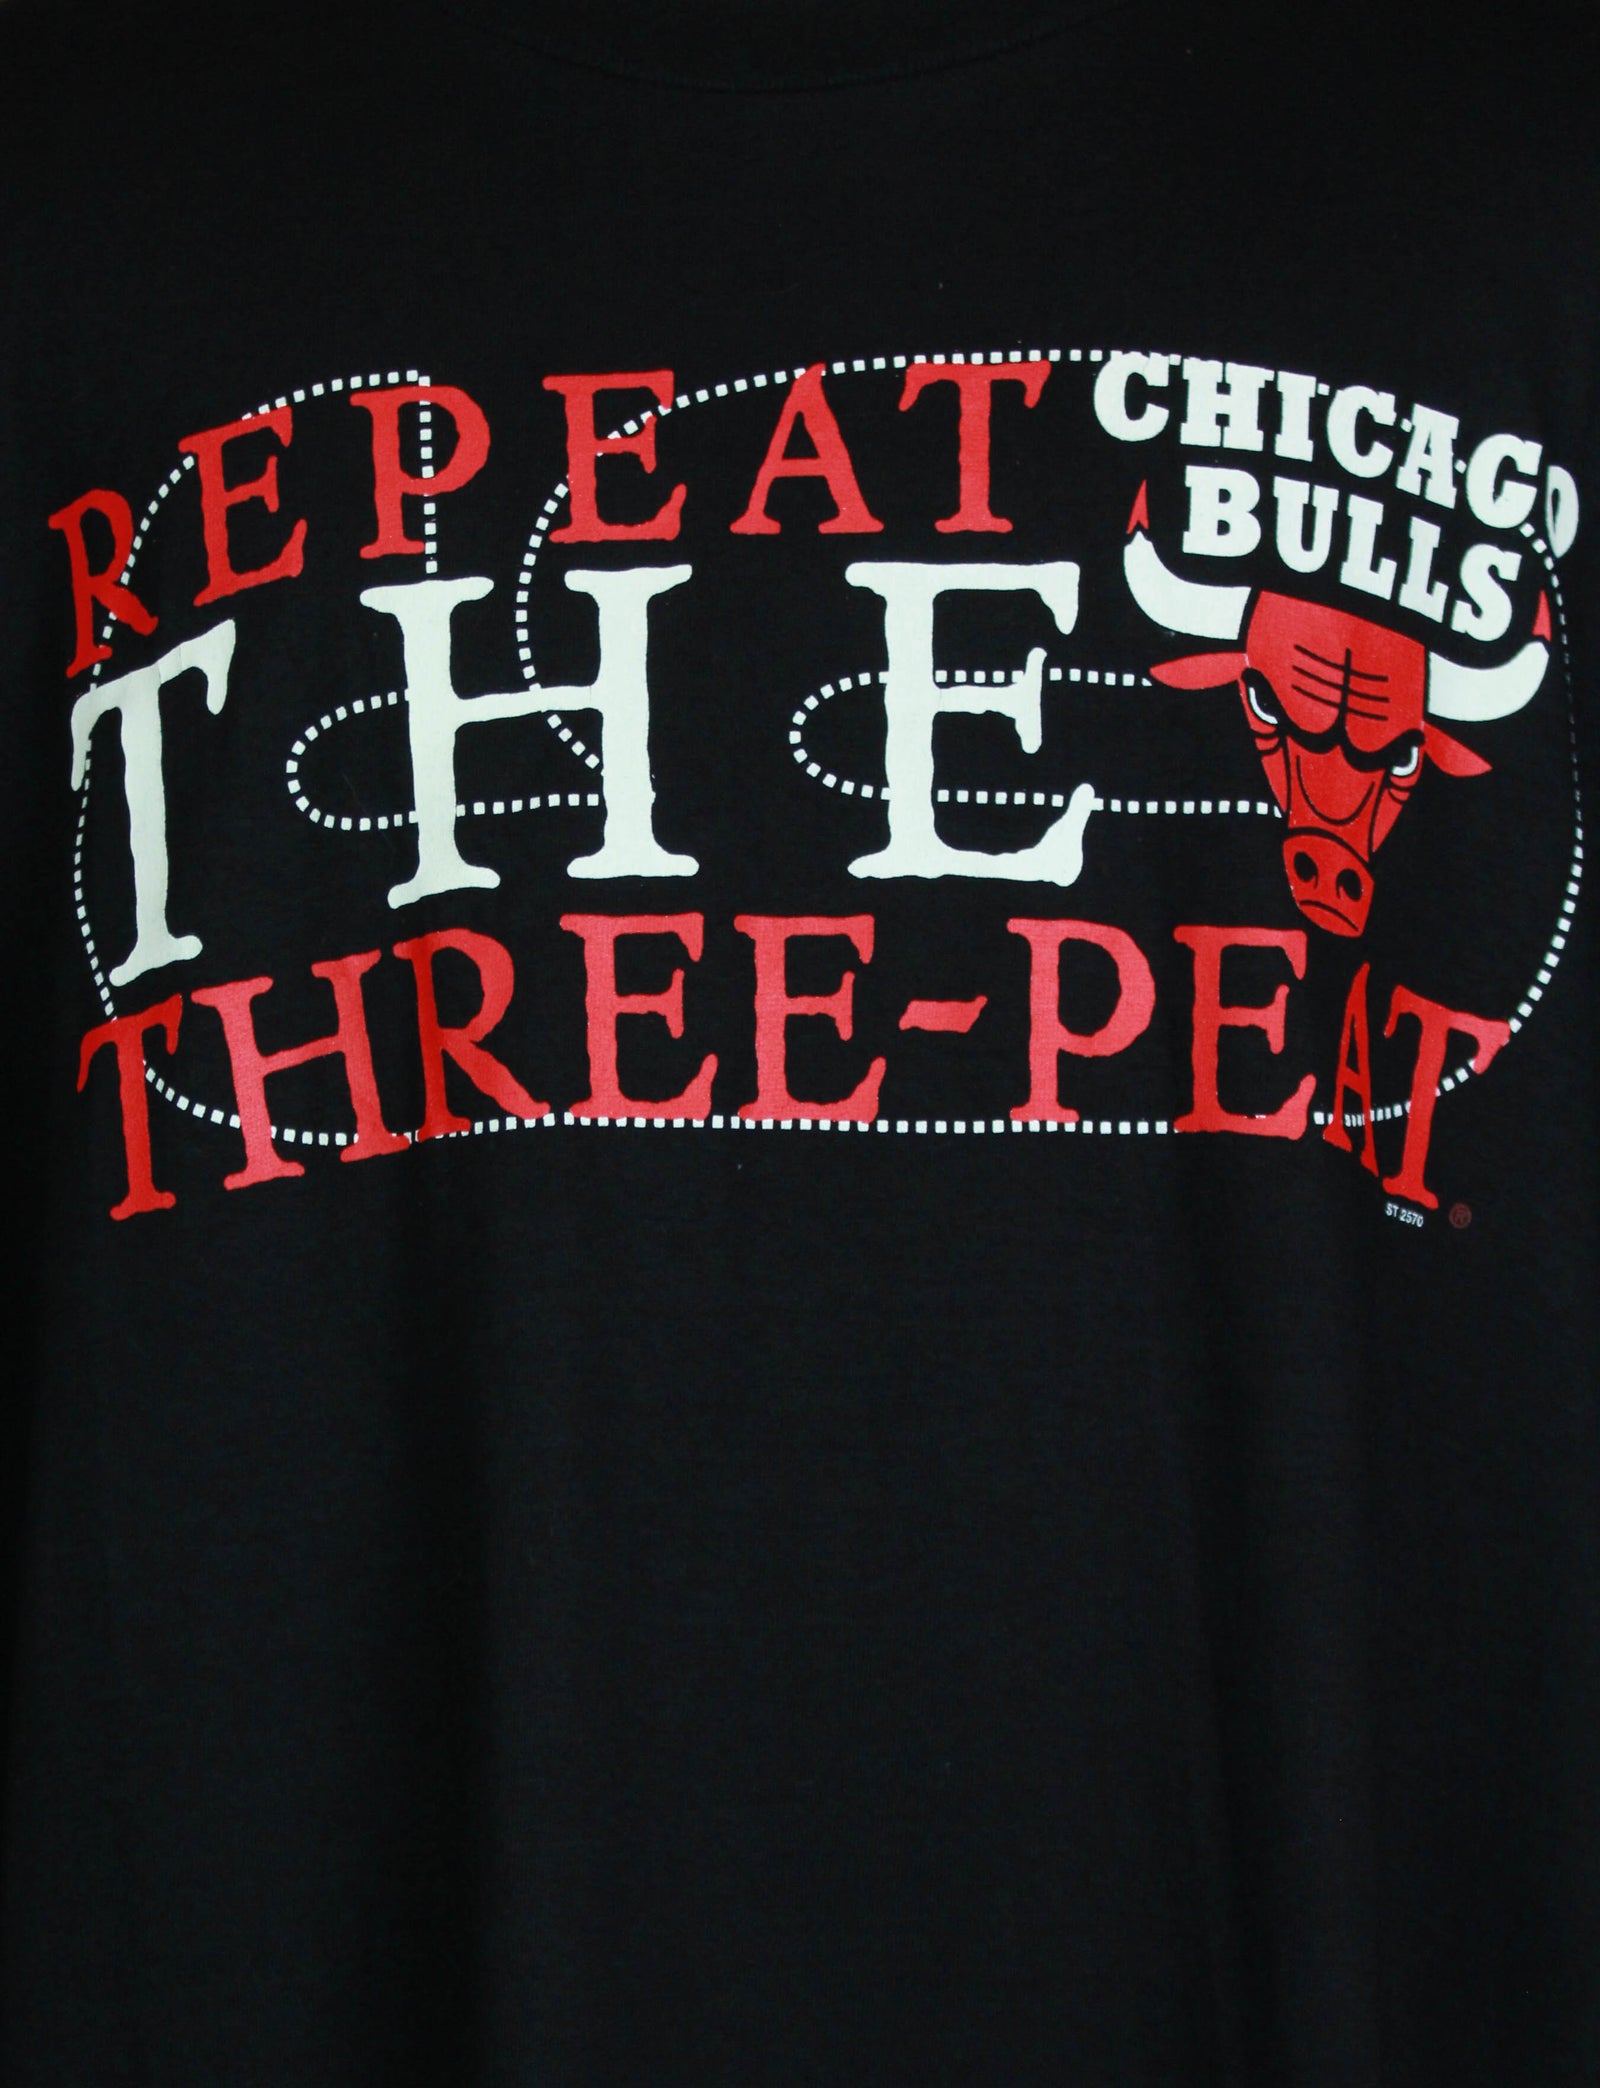 1998 Chicago Bulls Repeat 3 Peat NBA Finals